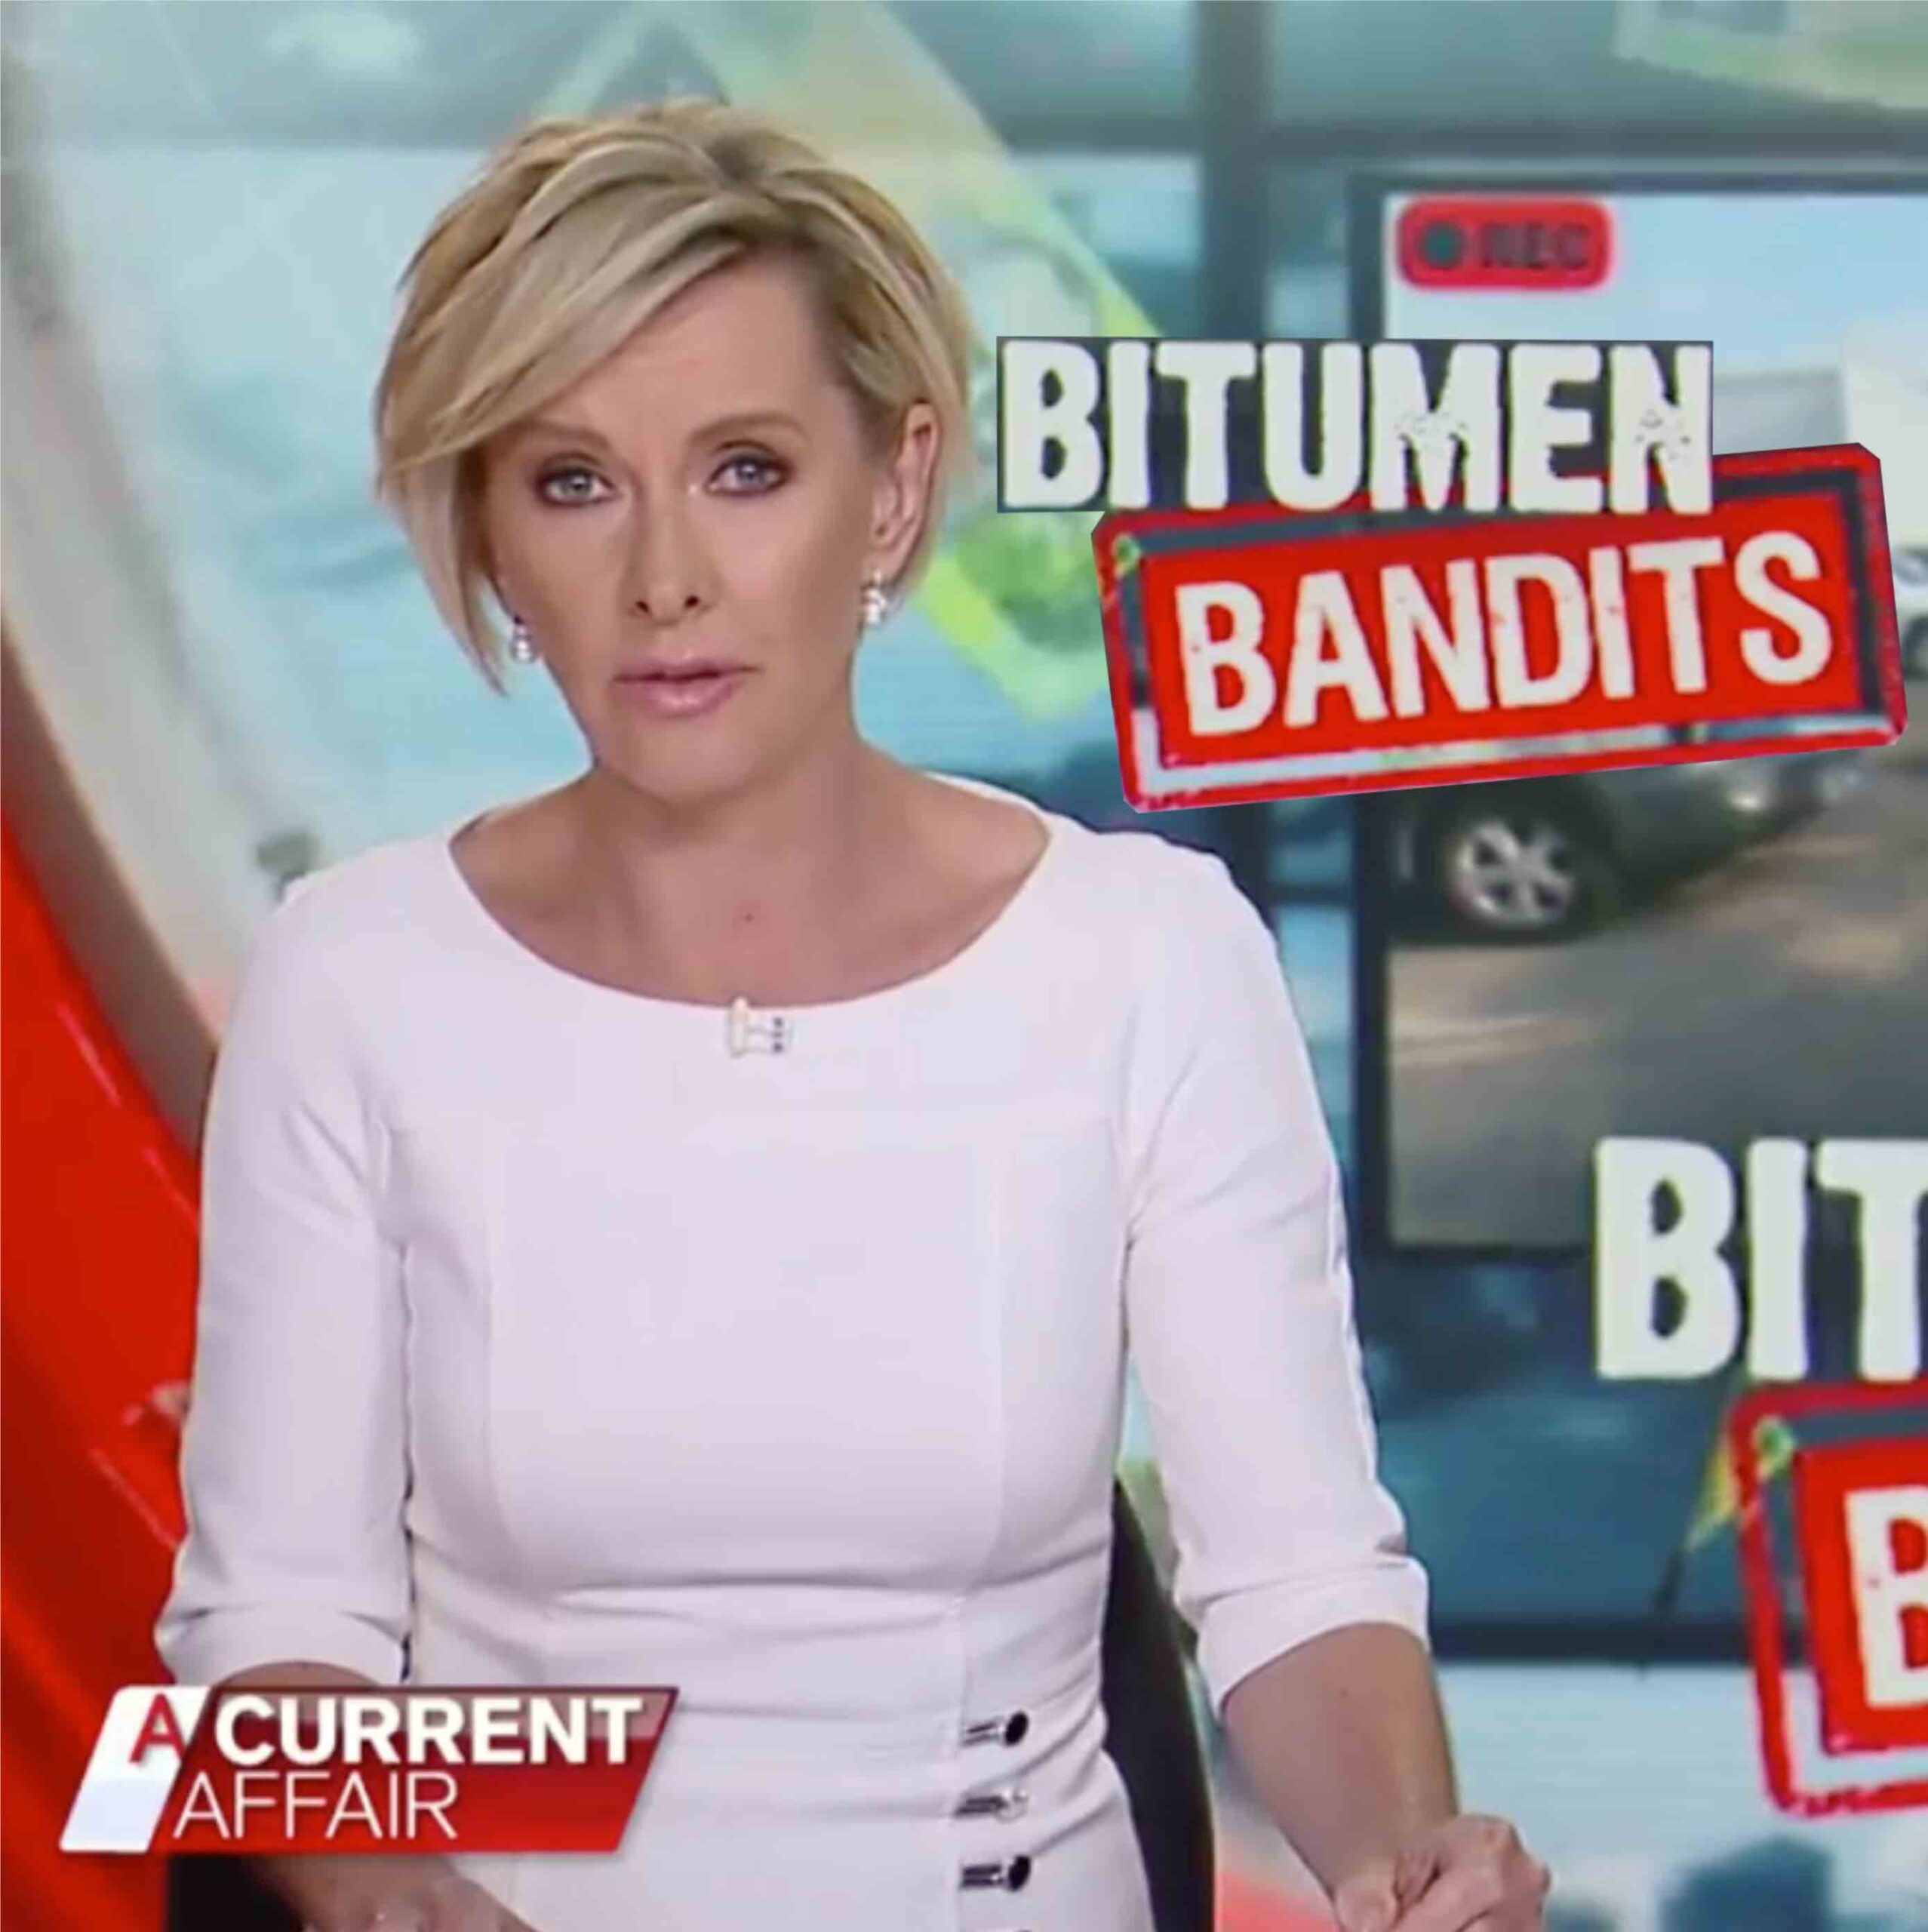 A current affair still about the bitumen bandits